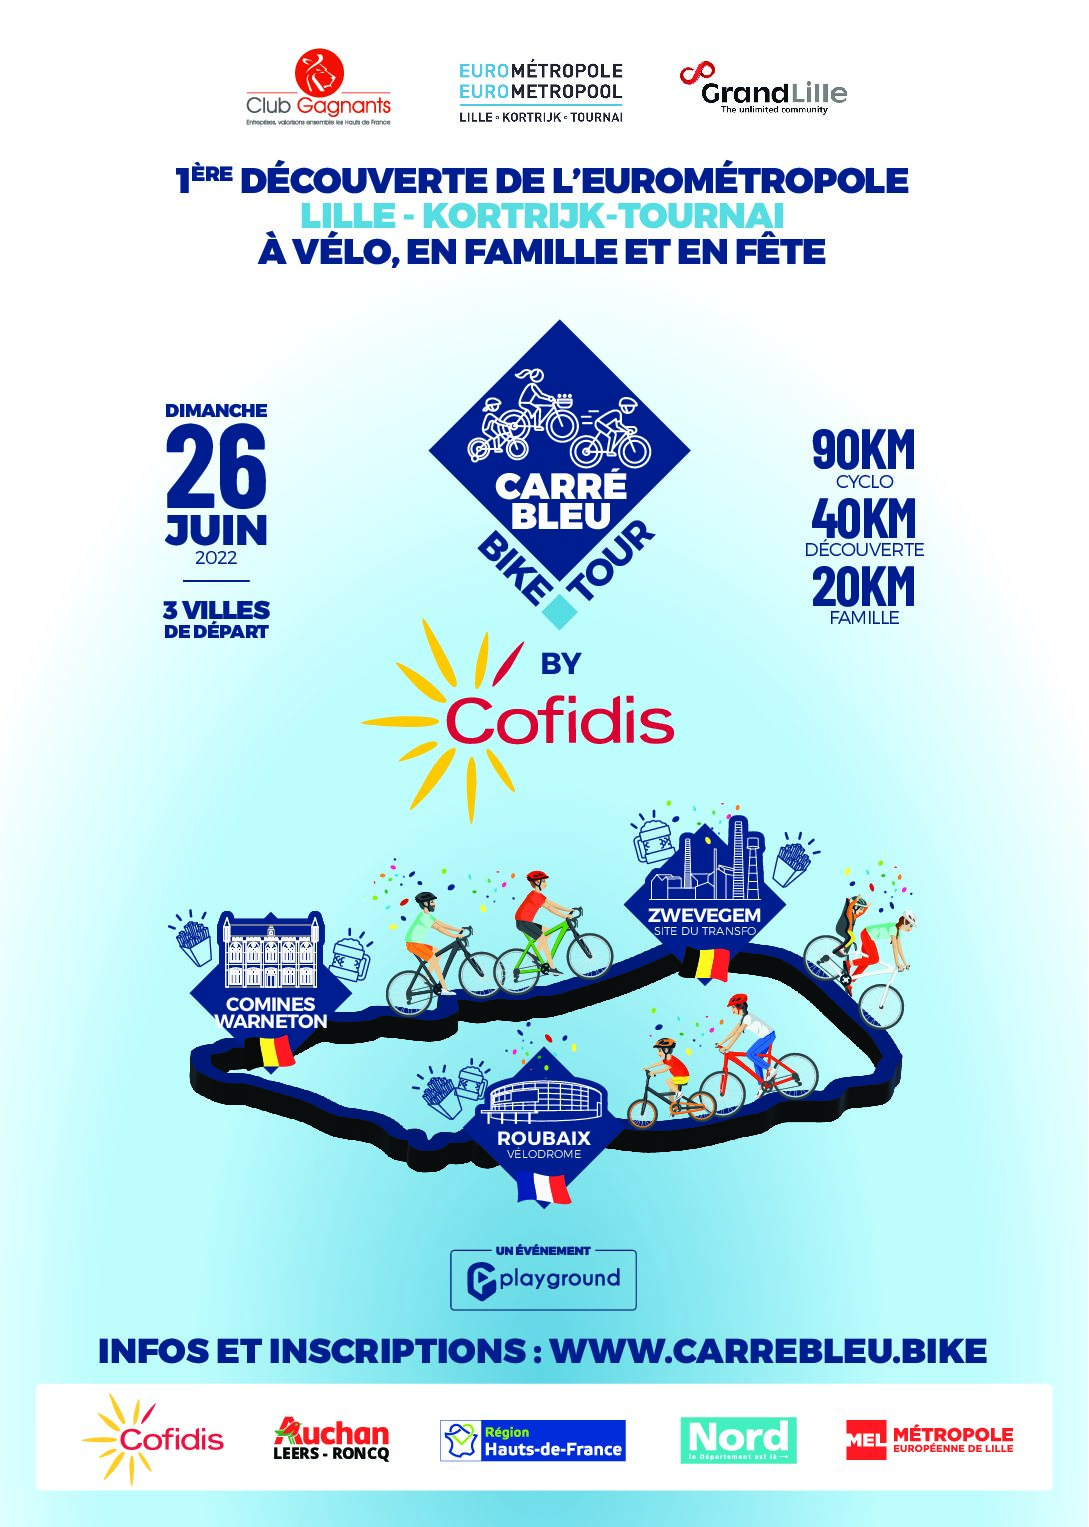 CARRE BLEU BIKE TOUR by Cofidis – Report en 2023